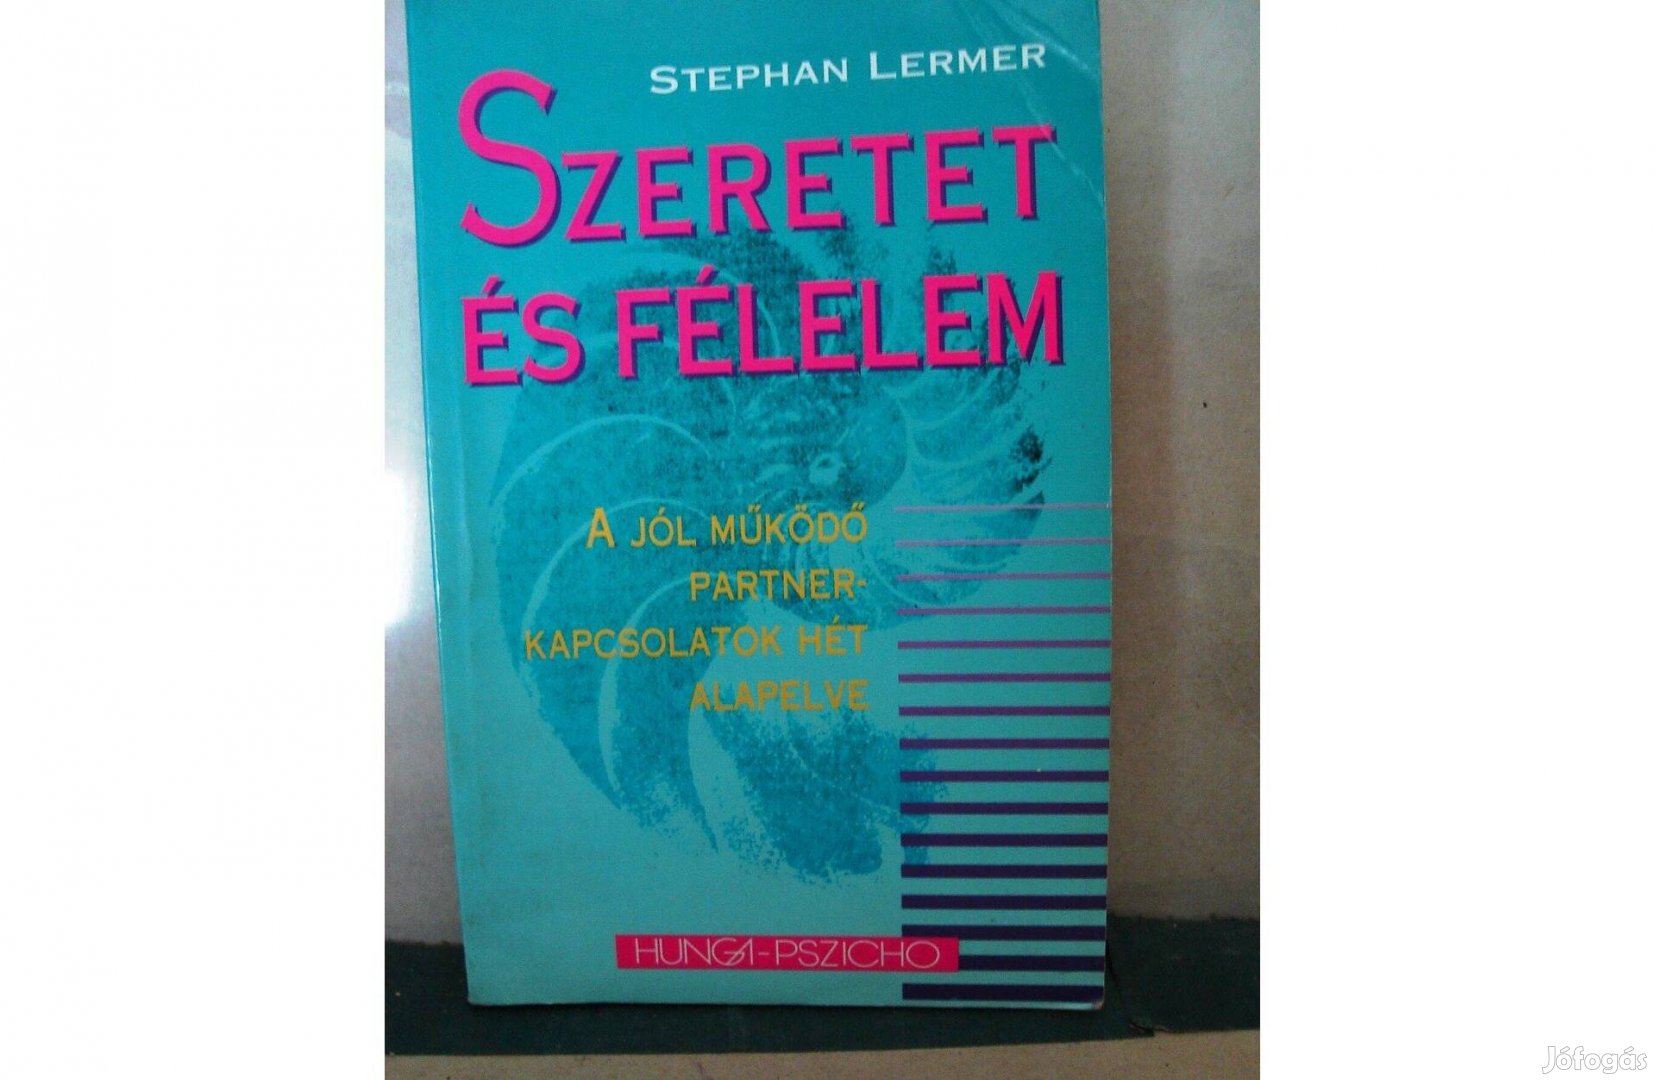 Stephan Lermer: Szeretet és félelem